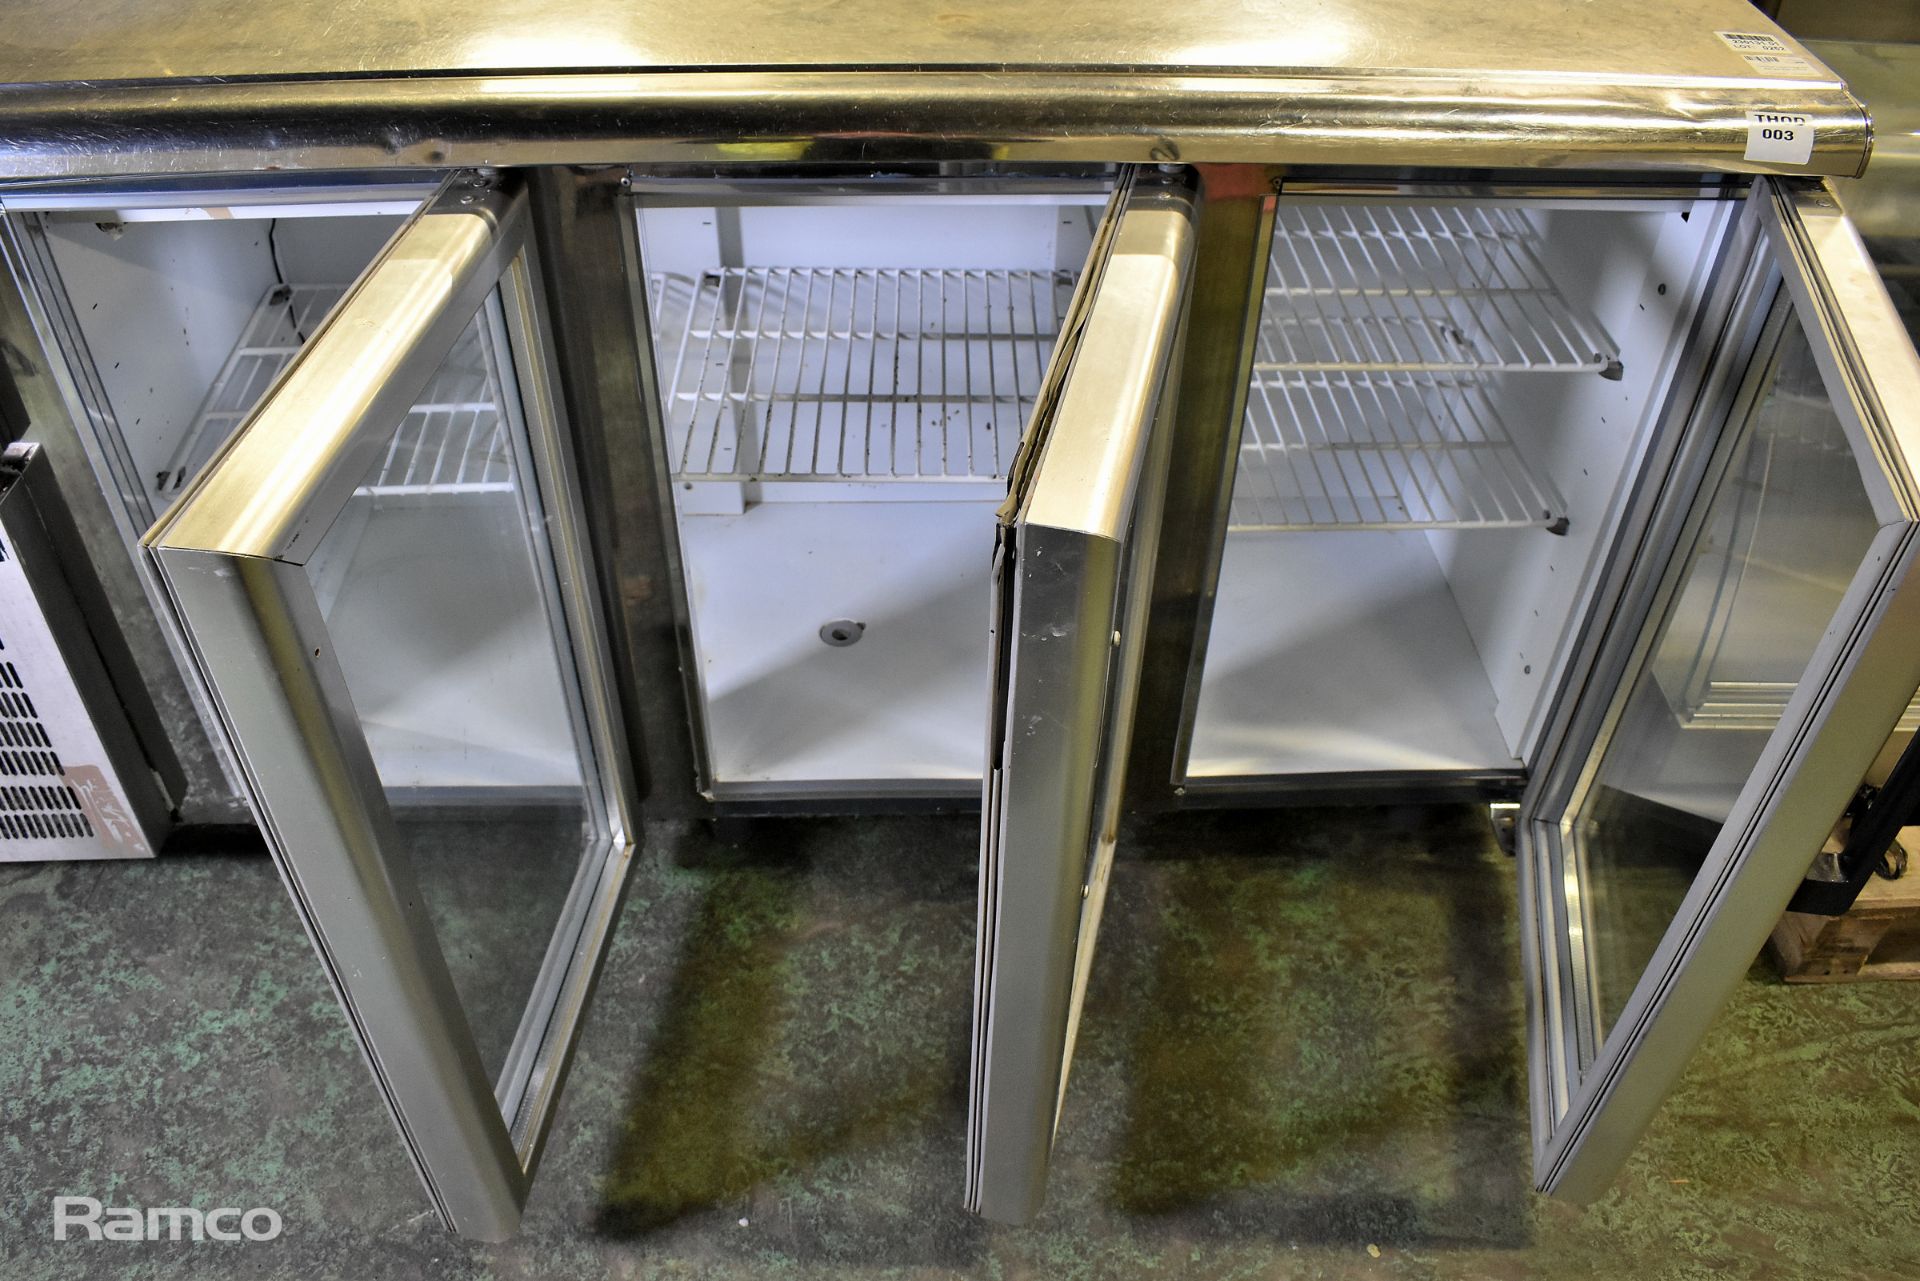 Comersa glass fronted 3 door fridge with stainless steel worktop - Image 7 of 10